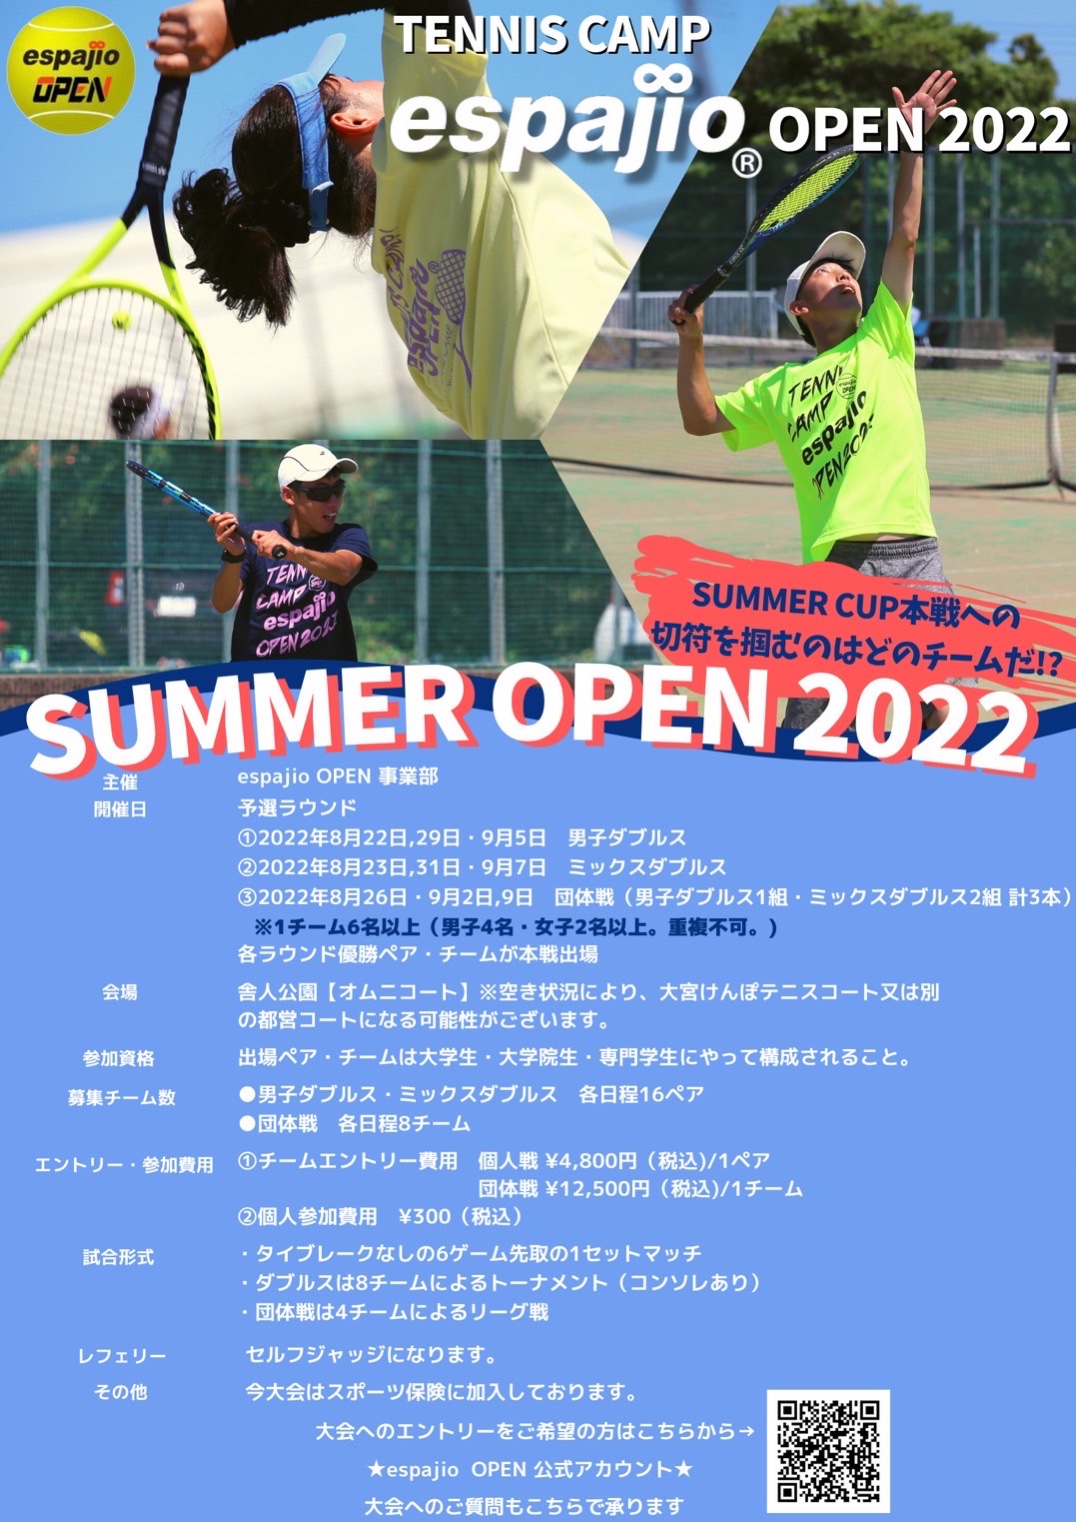 espajio summer open 2022ご案内書